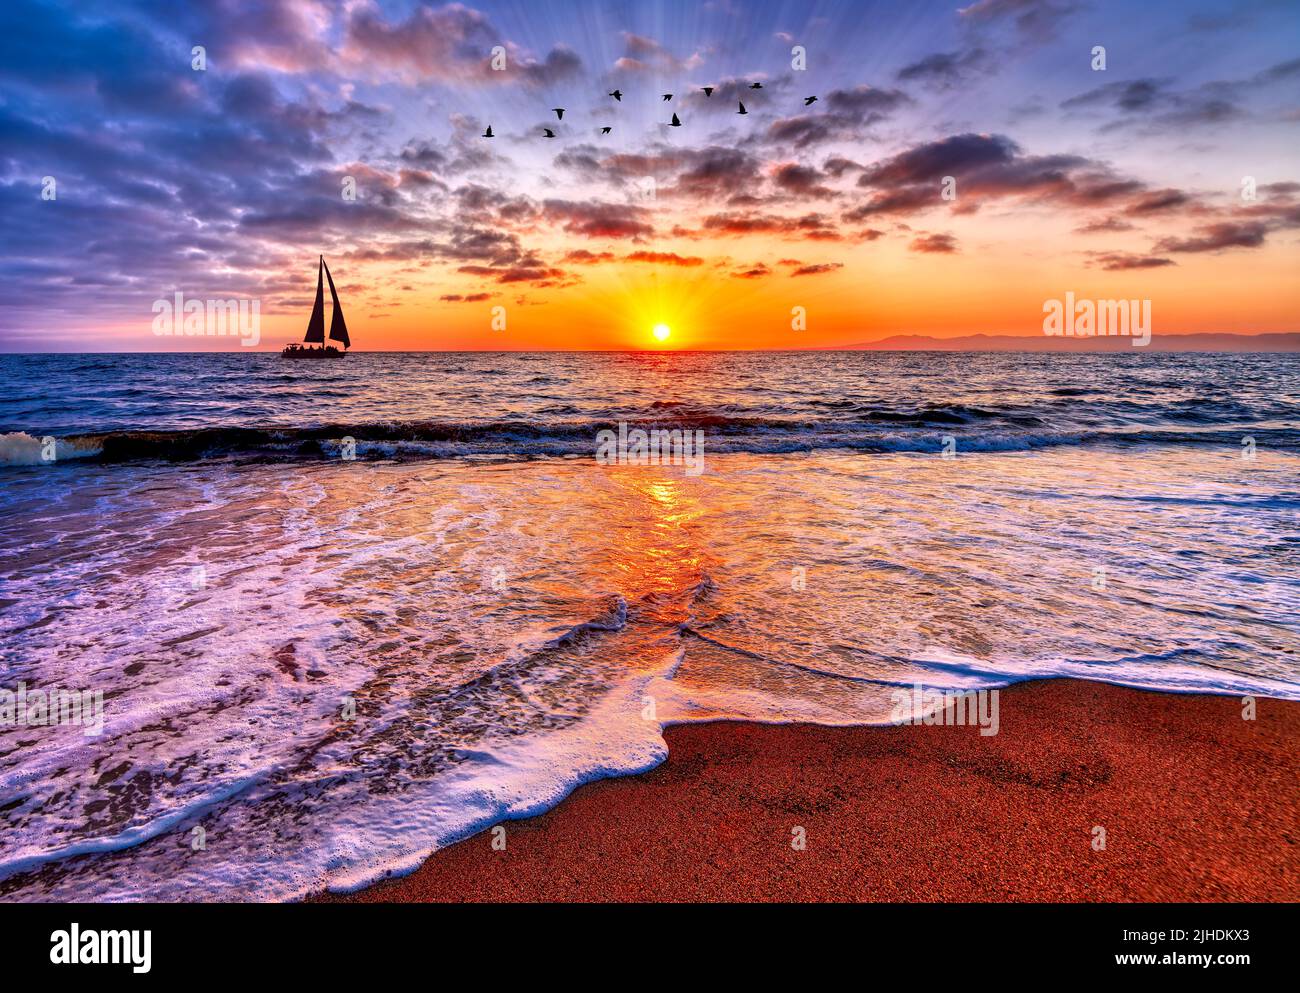 Los rayos del sol están estallando en el amanecer del horizonte del océano con un velero que vela y pájaros que vuelan sobre arriba Foto de stock